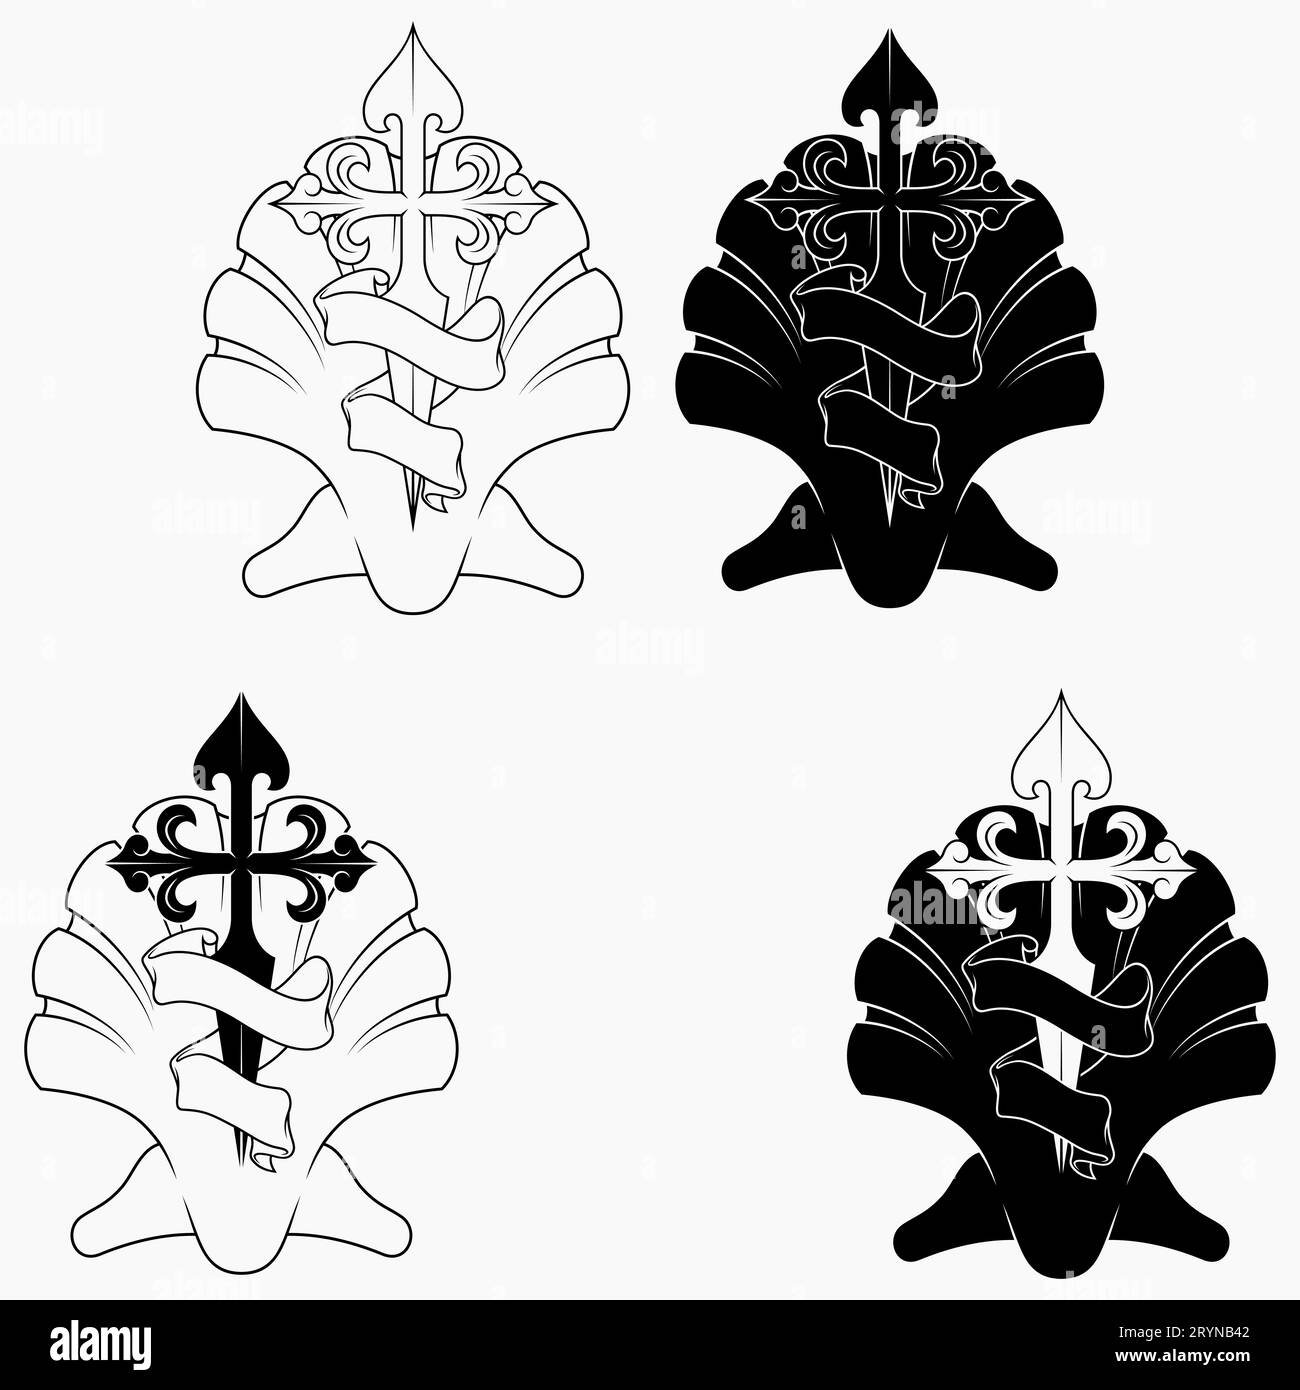 Disegno vettoriale della simbologia cristiana dell'apostolo santiago, croce dell'apostolo Santiago con impiallacciatura e nastro Illustrazione Vettoriale